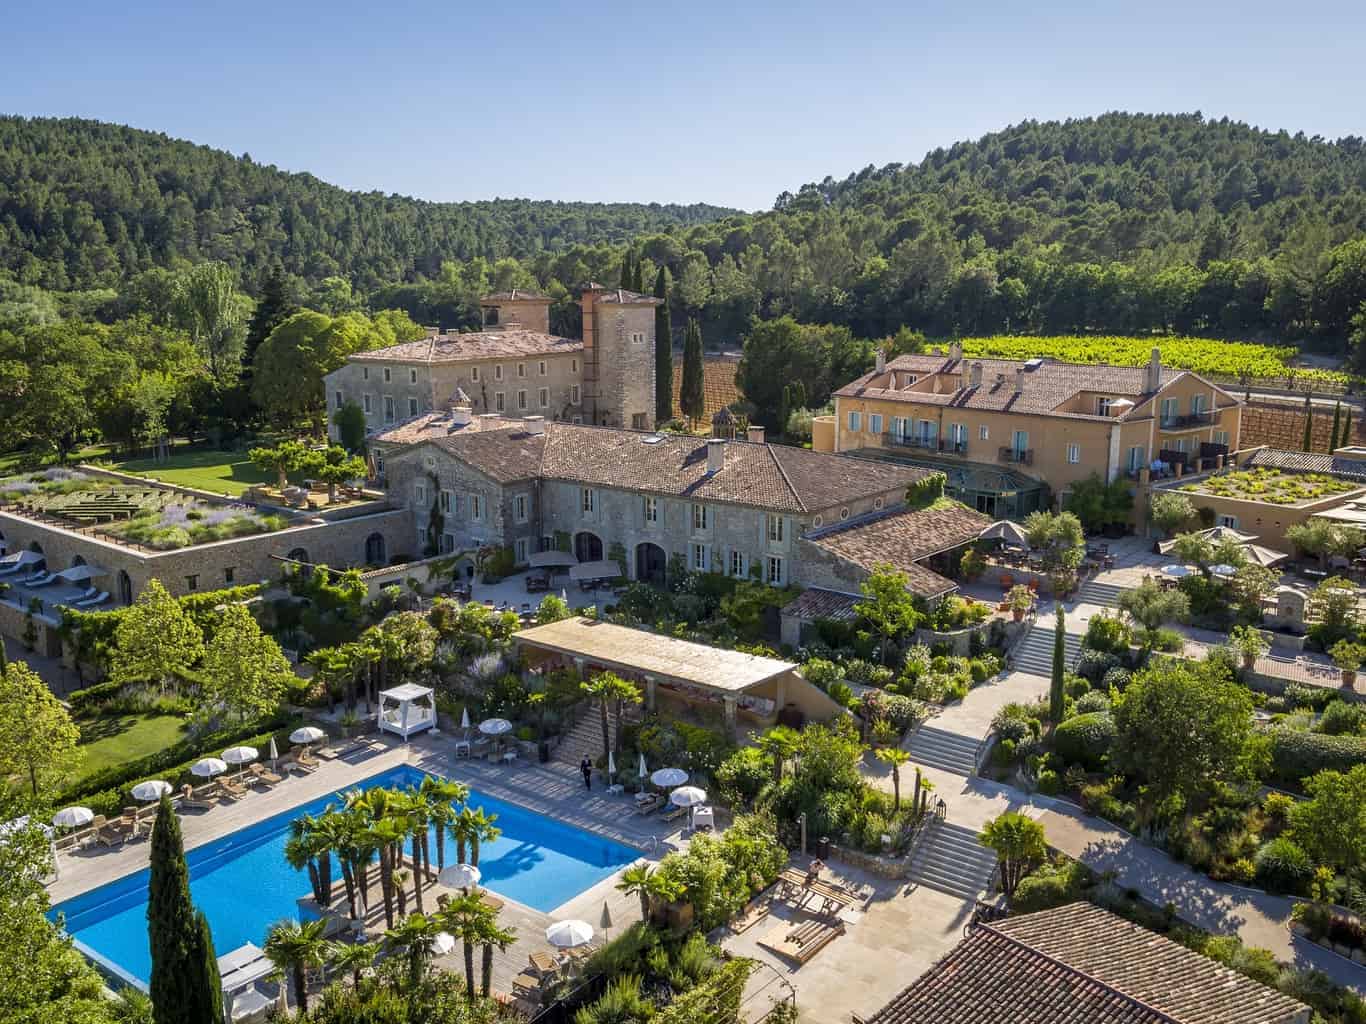 Château de Berne - Luxury Hotel in Provence